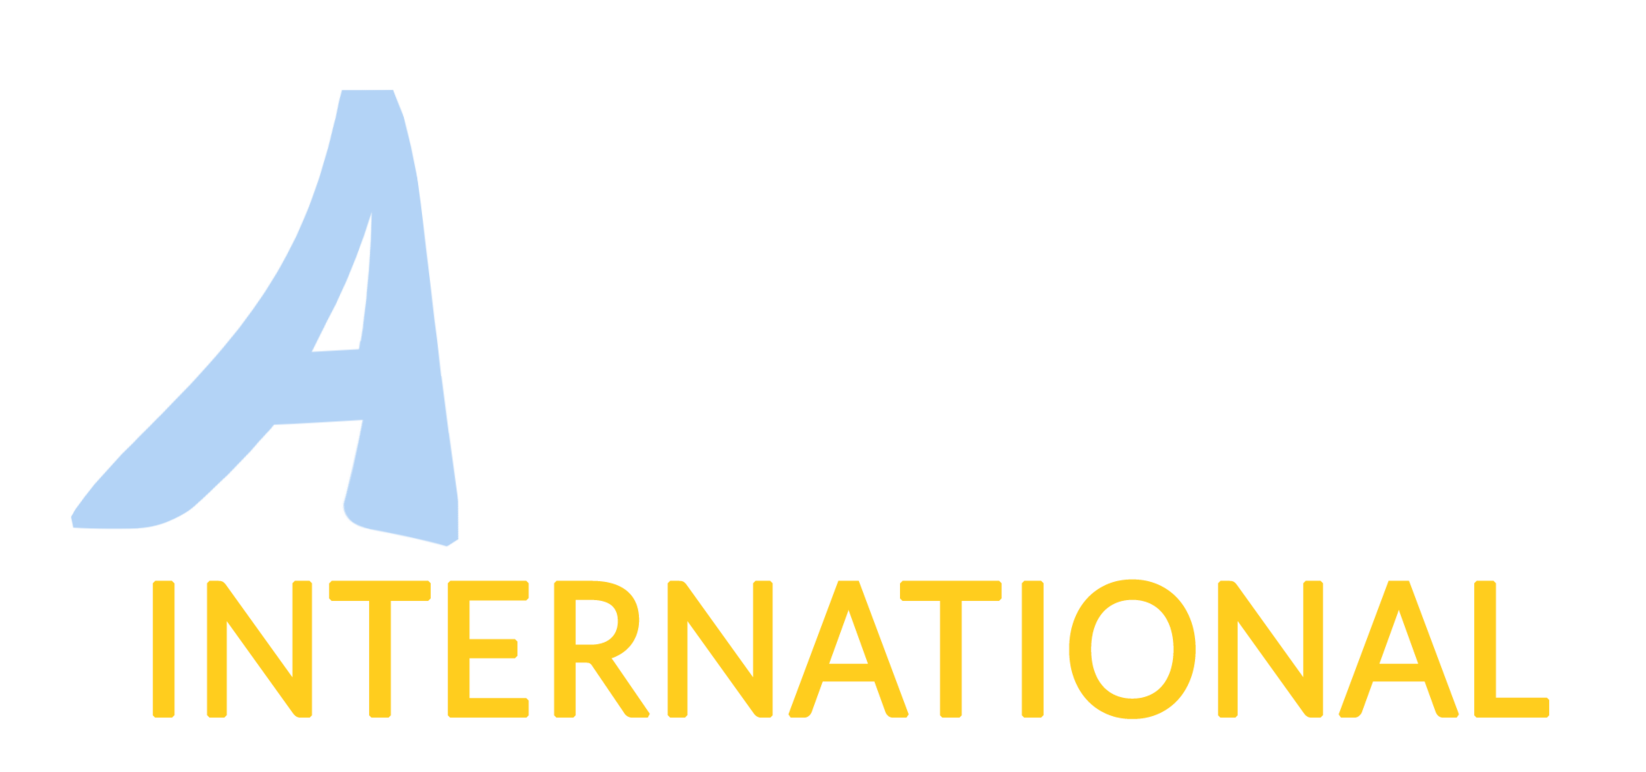 ABSR International color orange